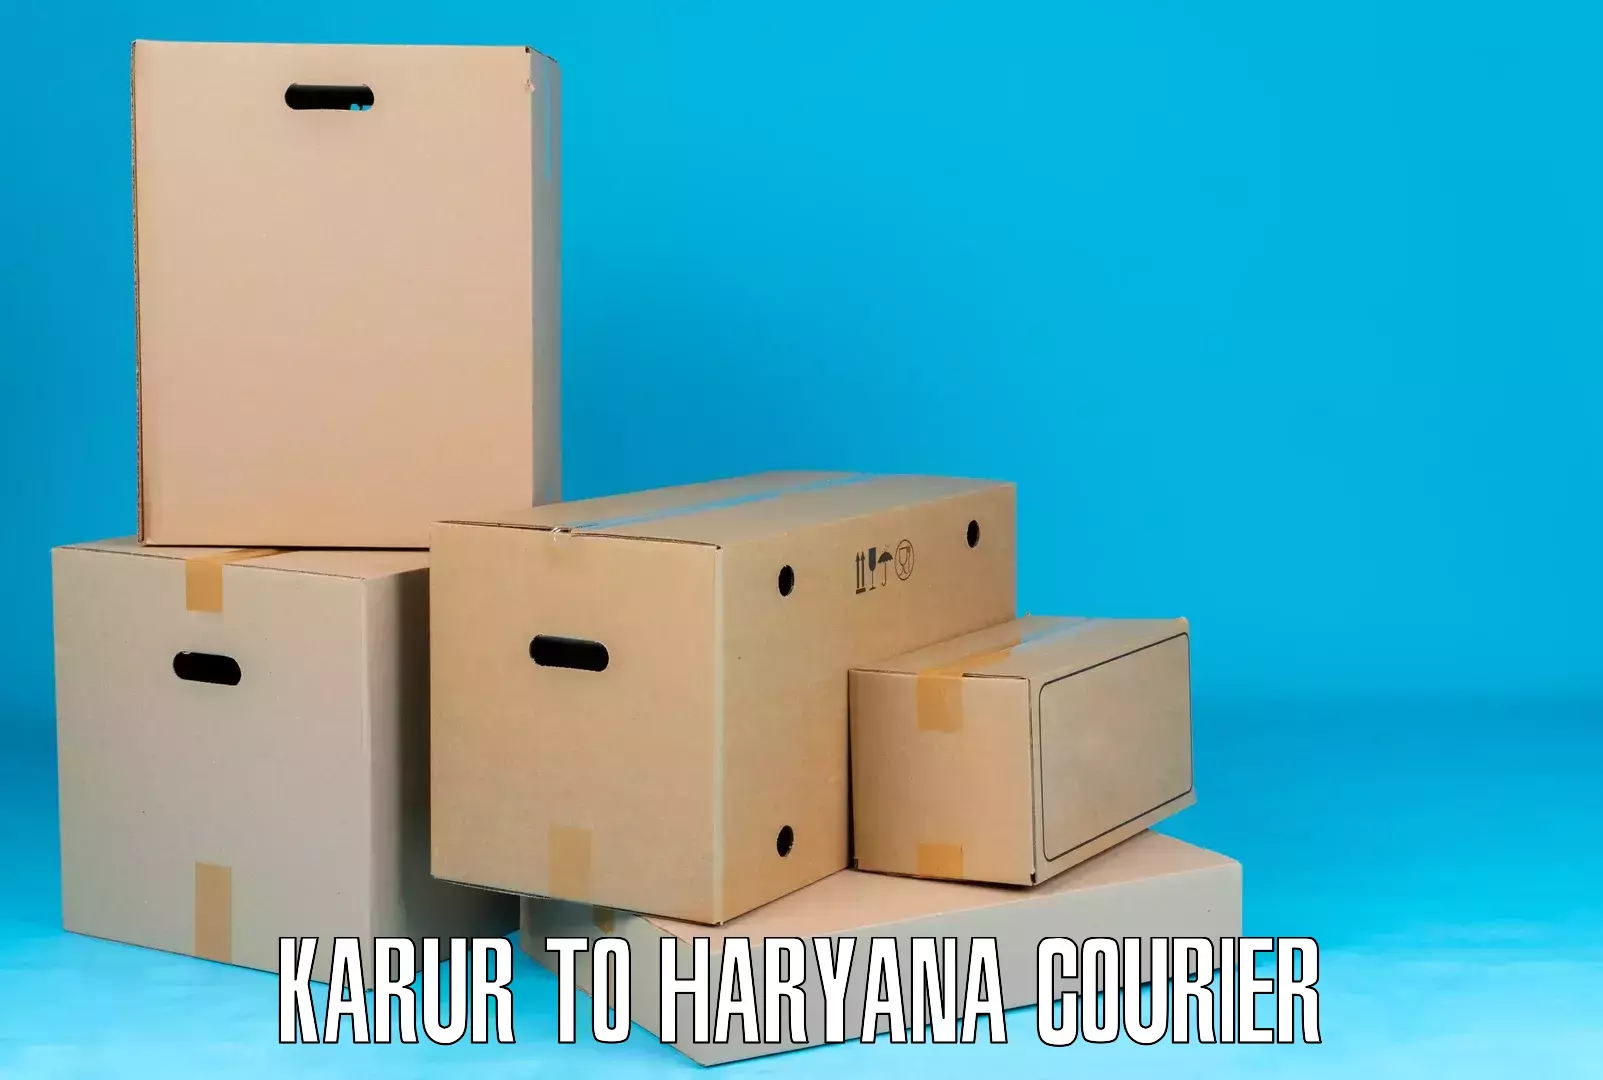 Affordable parcel service Karur to Haryana